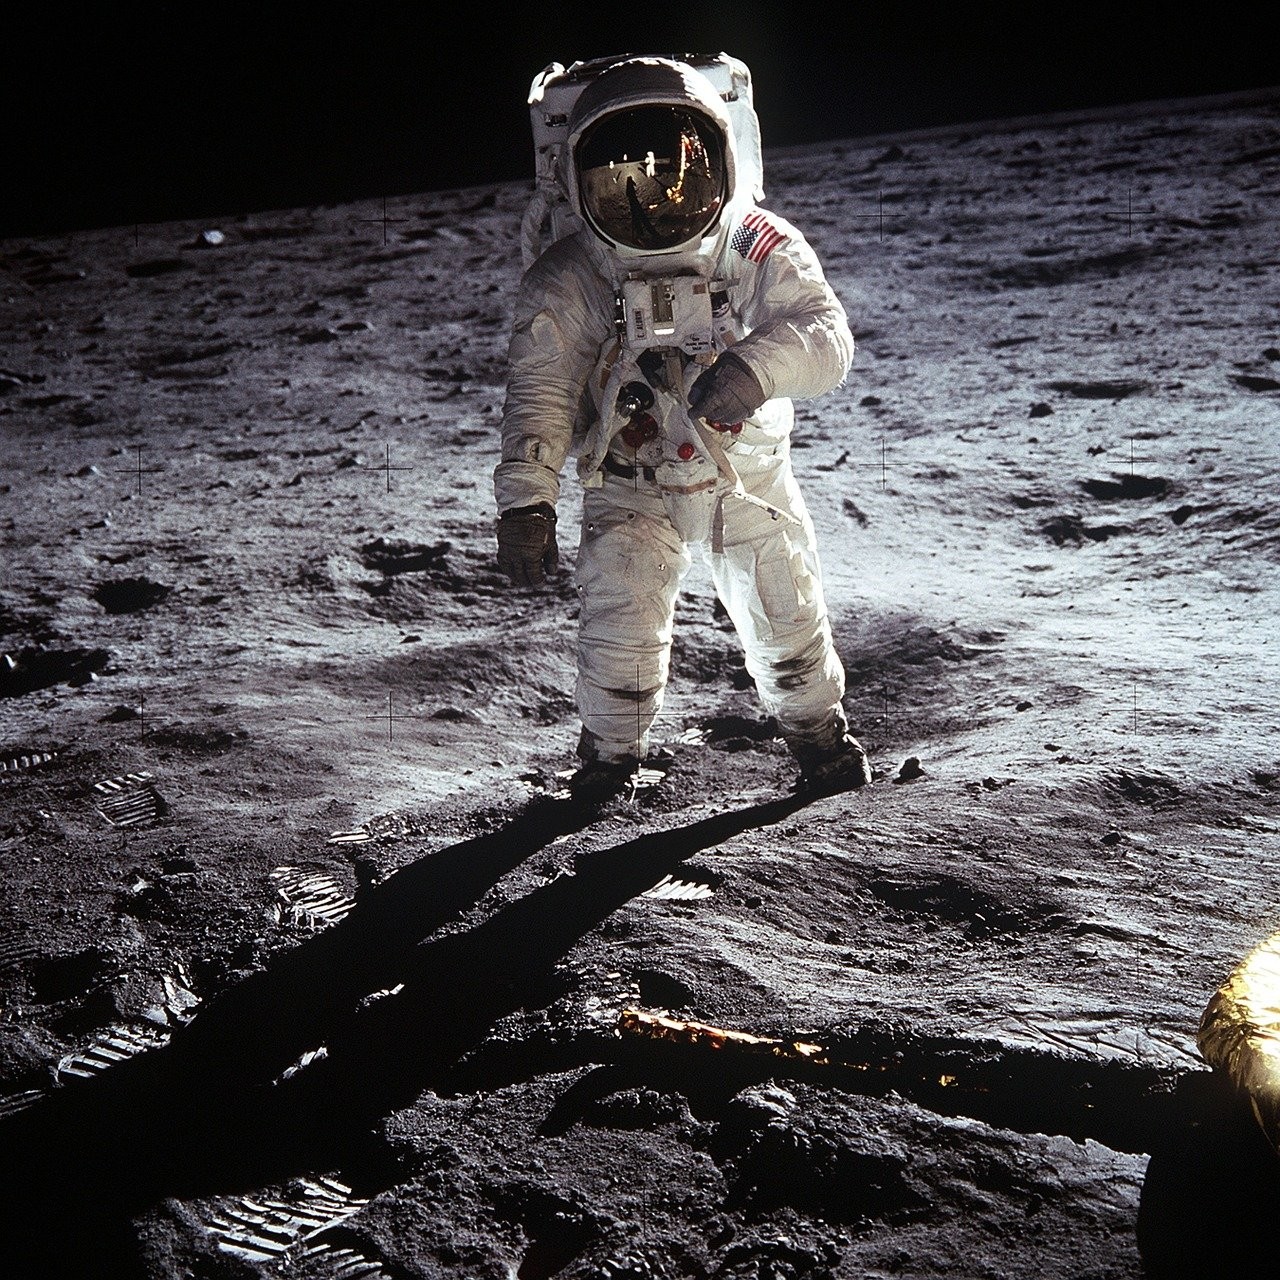 50 lat trzymali księżycowe próbki w zamknięciu. Skąd decyzja o ich otwarciu?